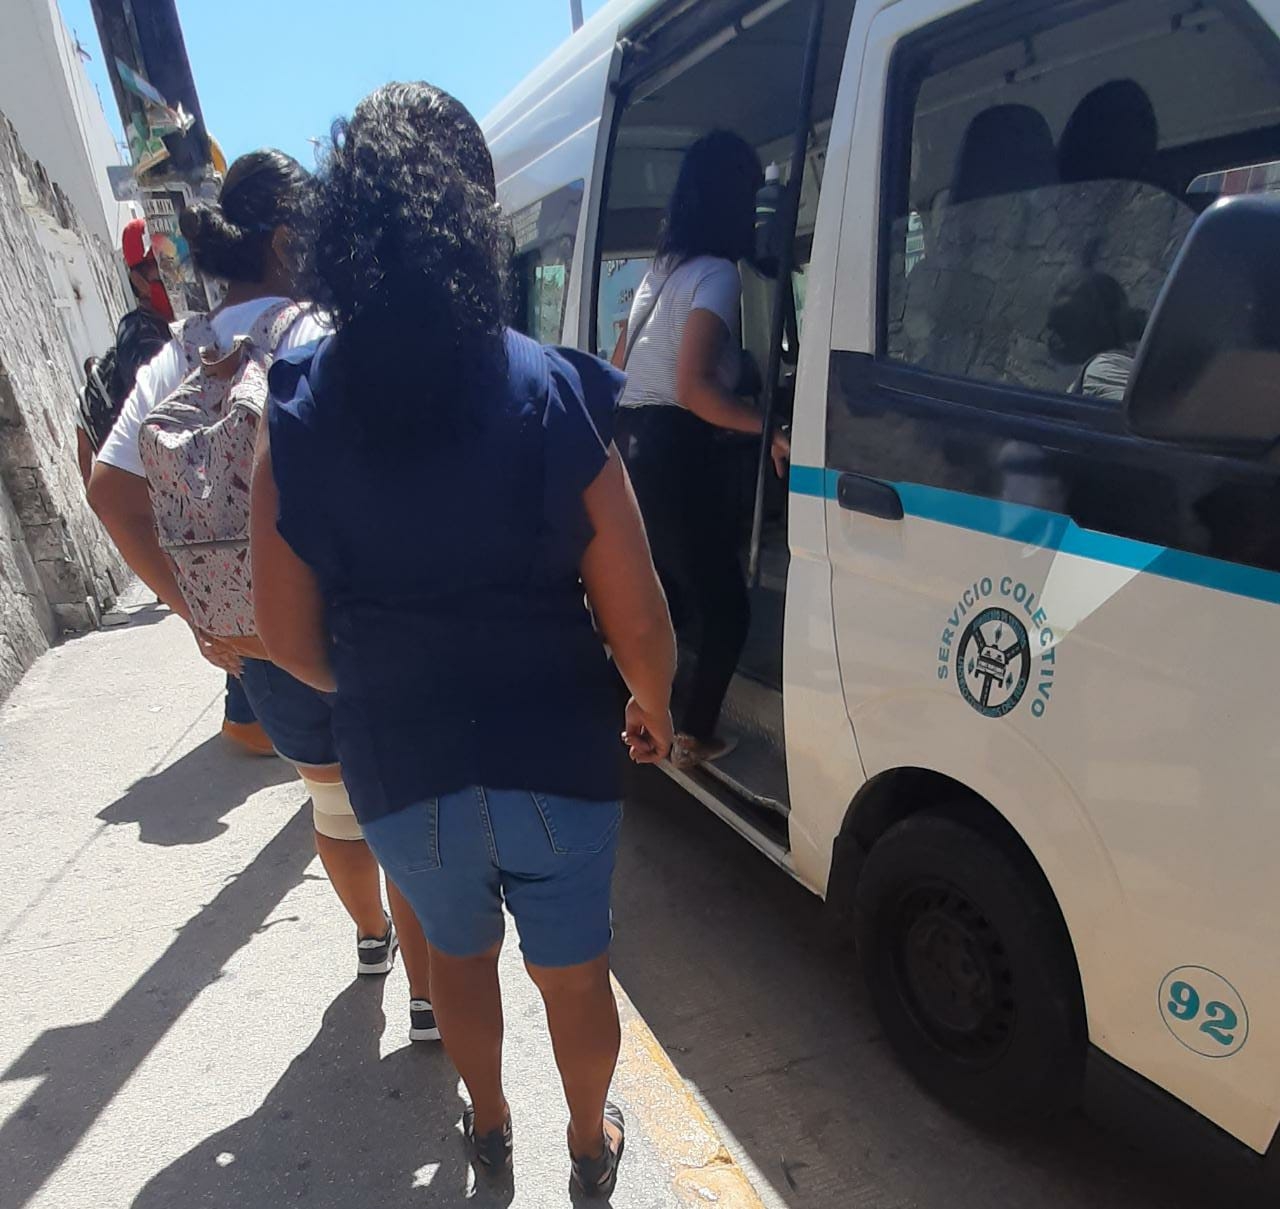 Transporte público en Playa del Carmen expone a usuarios al COVID-19